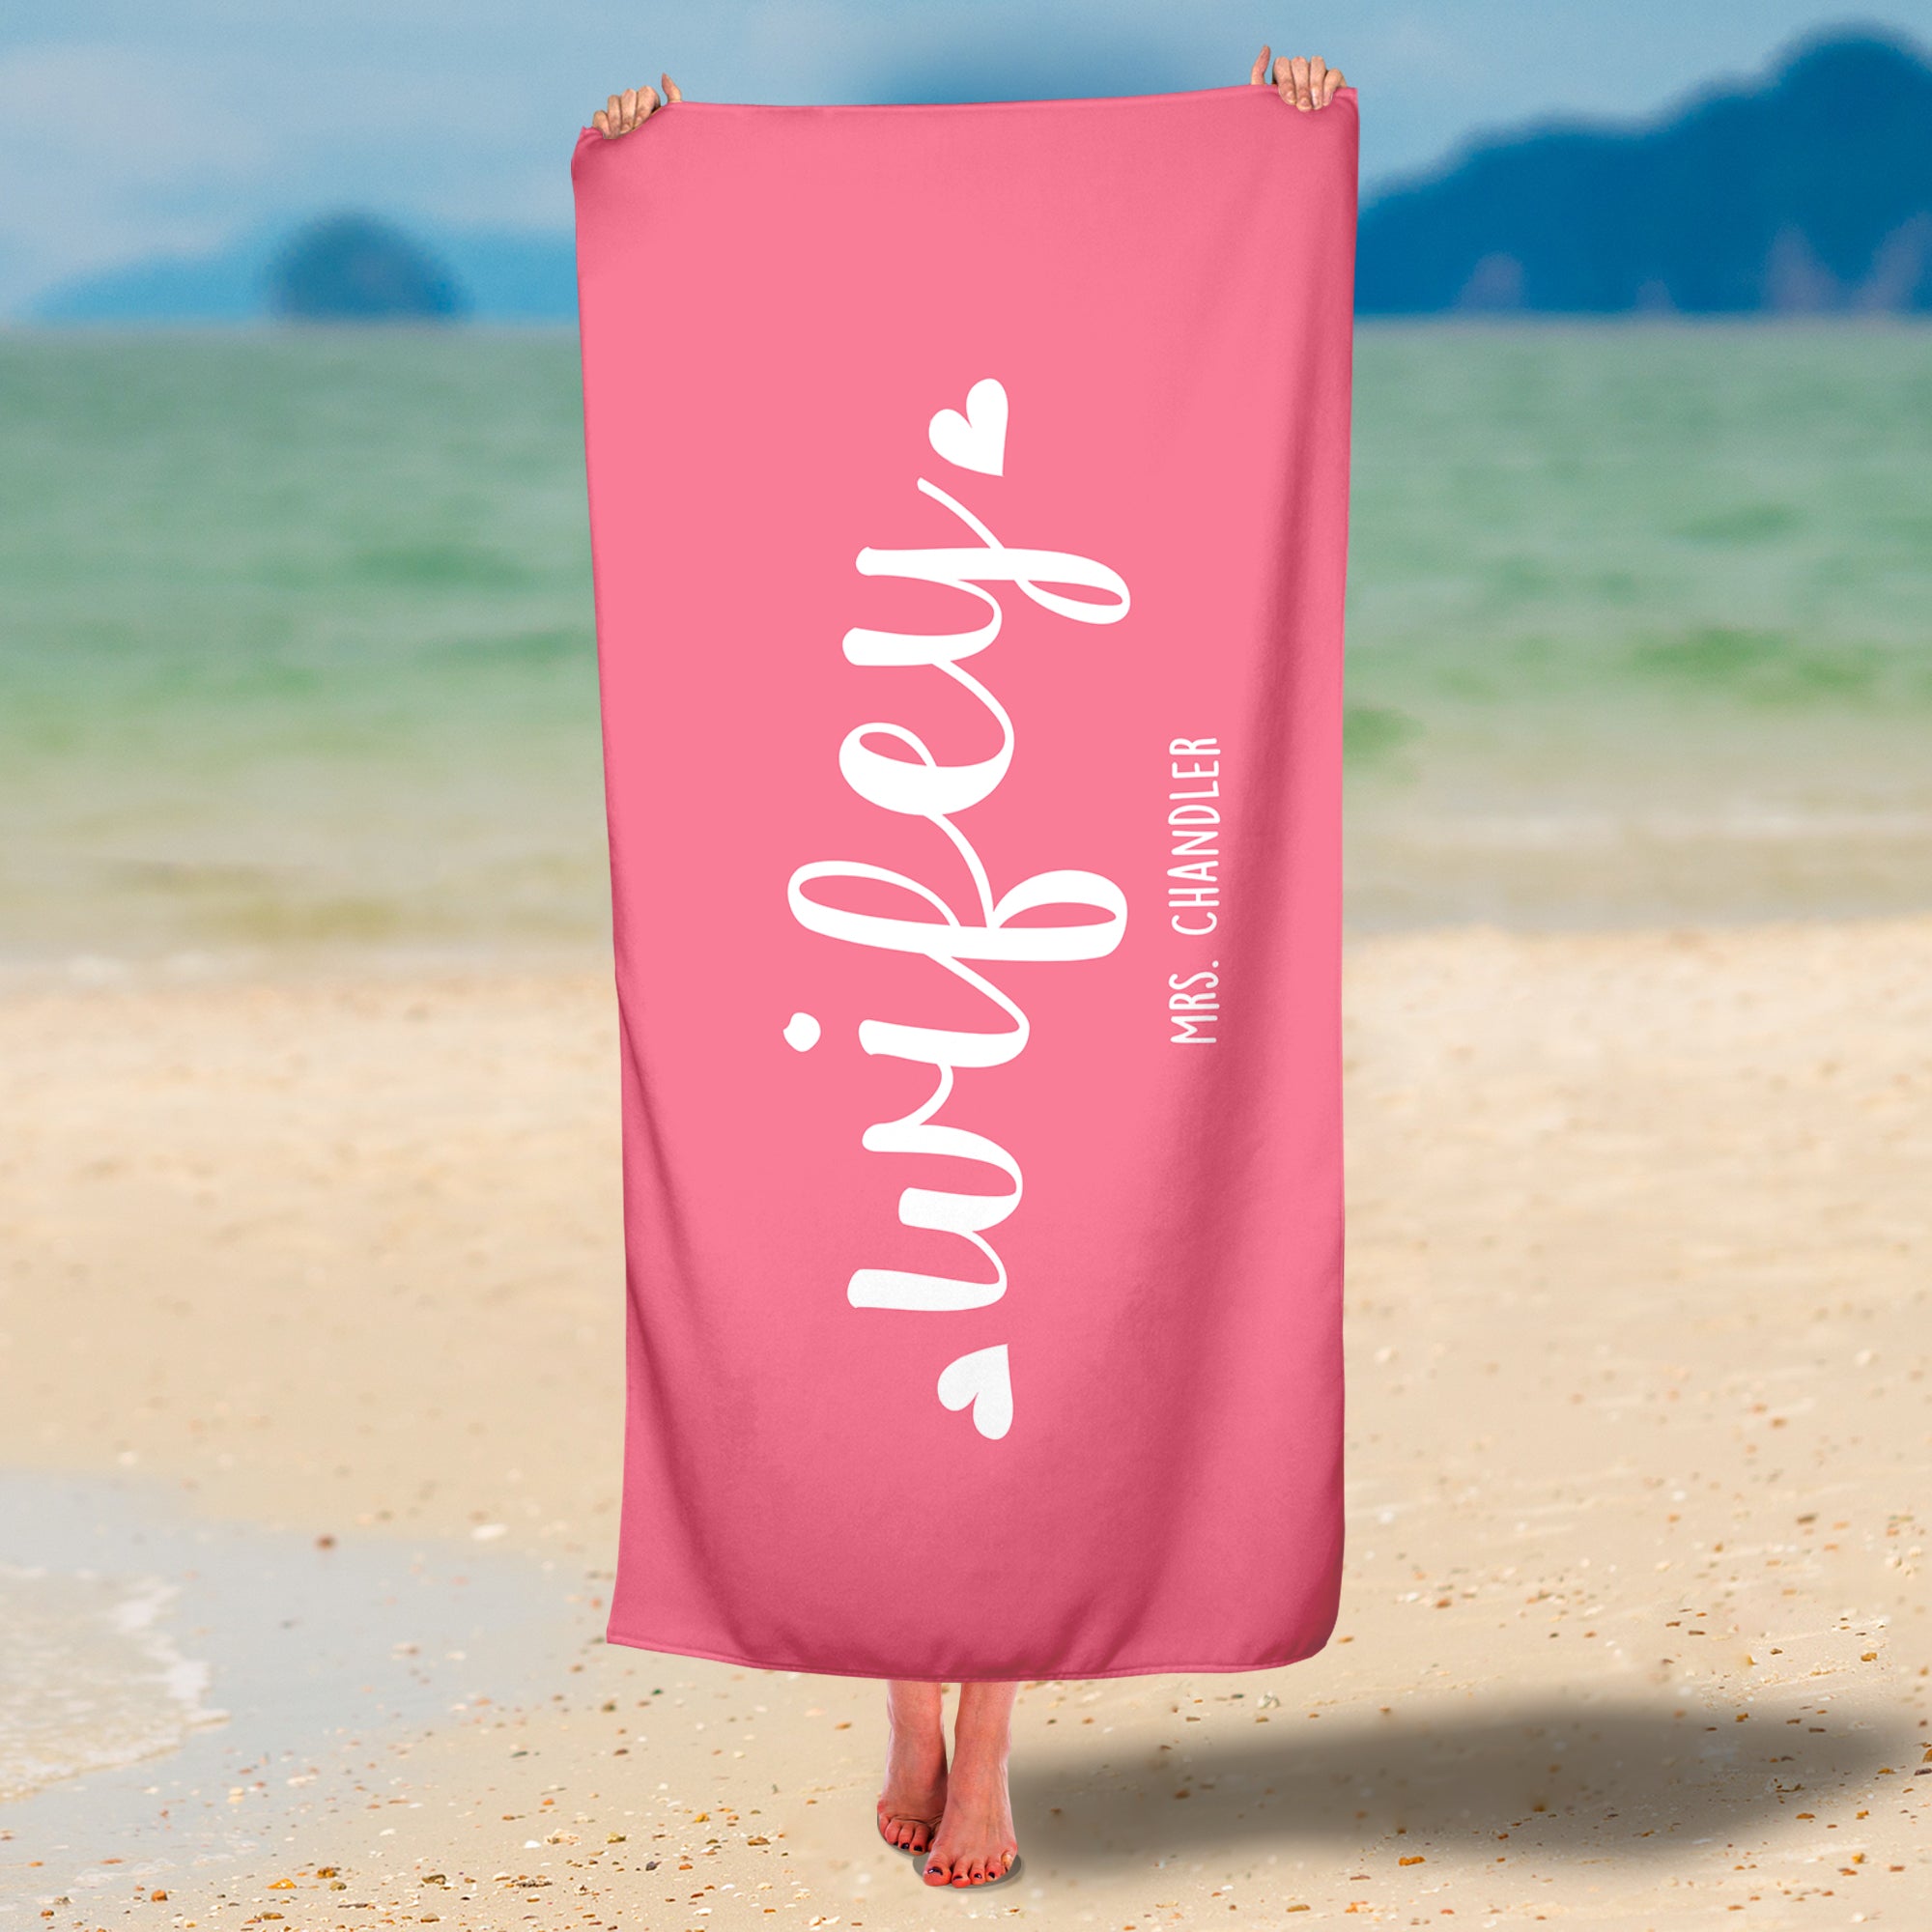 Personalized Wifey & Hubby Premium Beach/Pool Towel